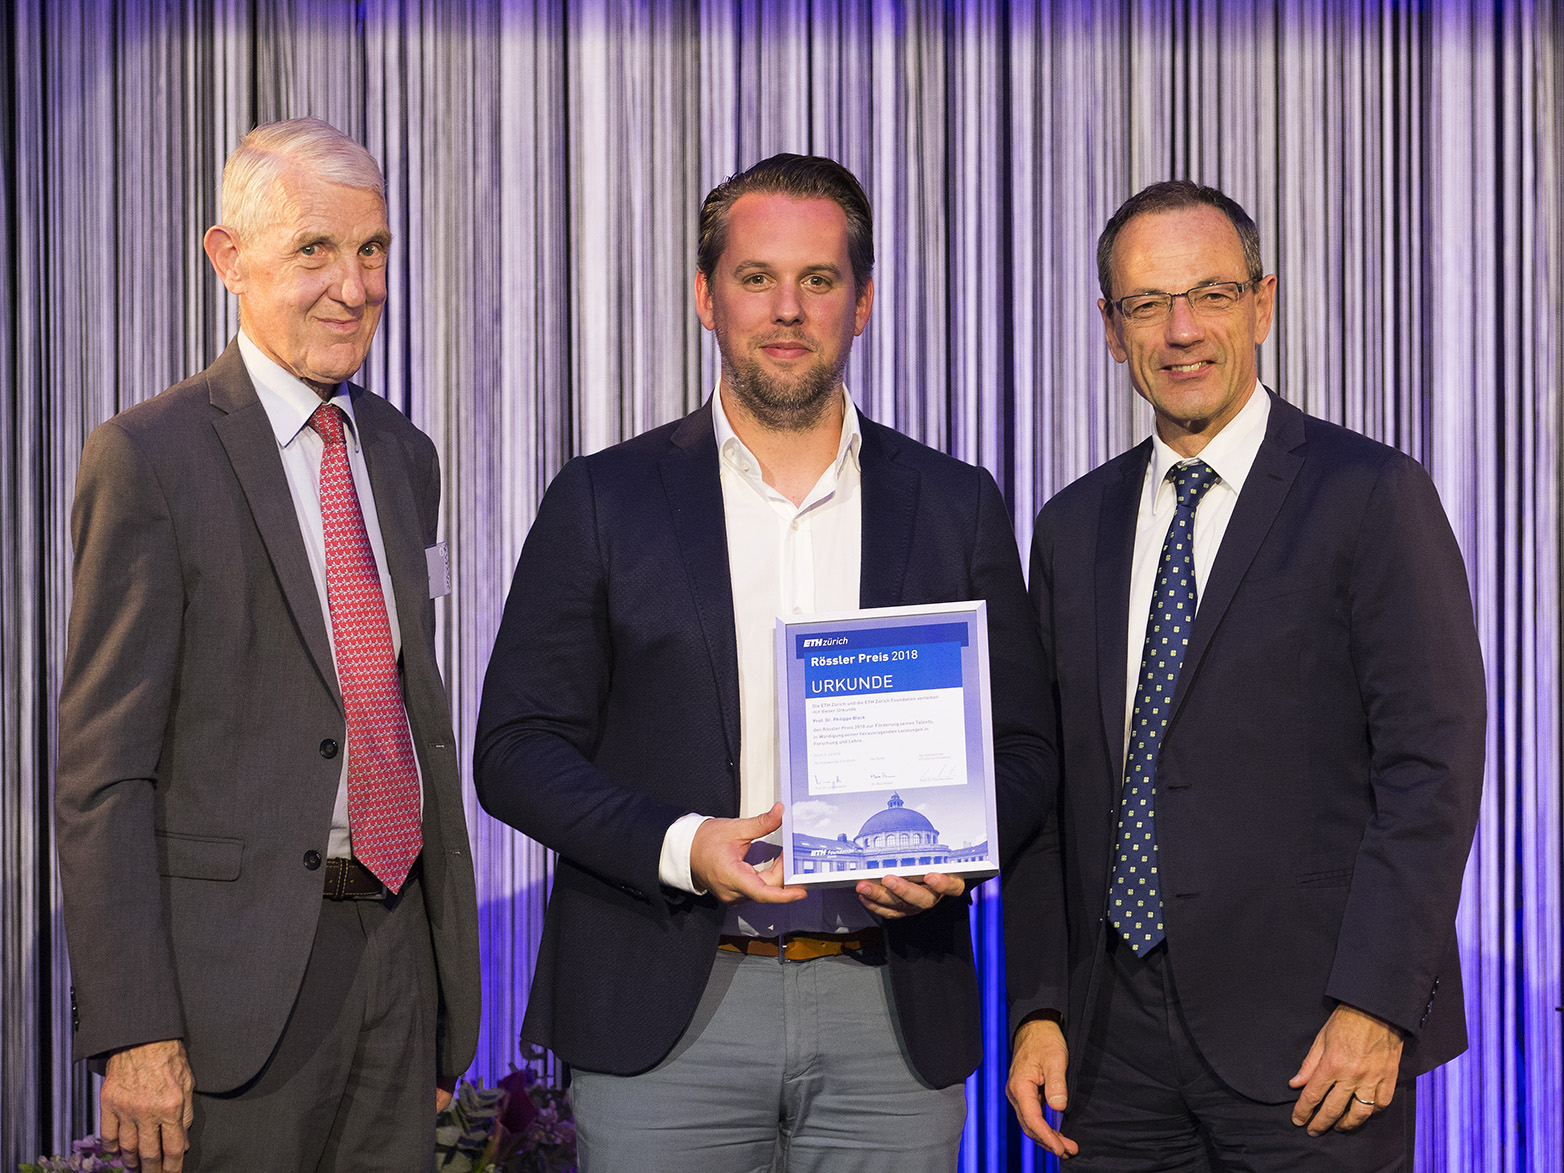 Max Rössler, this year's prize winner Philippe Block and ETH President Lino Guzzella. (Photograph: Nicola Pitaro / ETH Zurich)